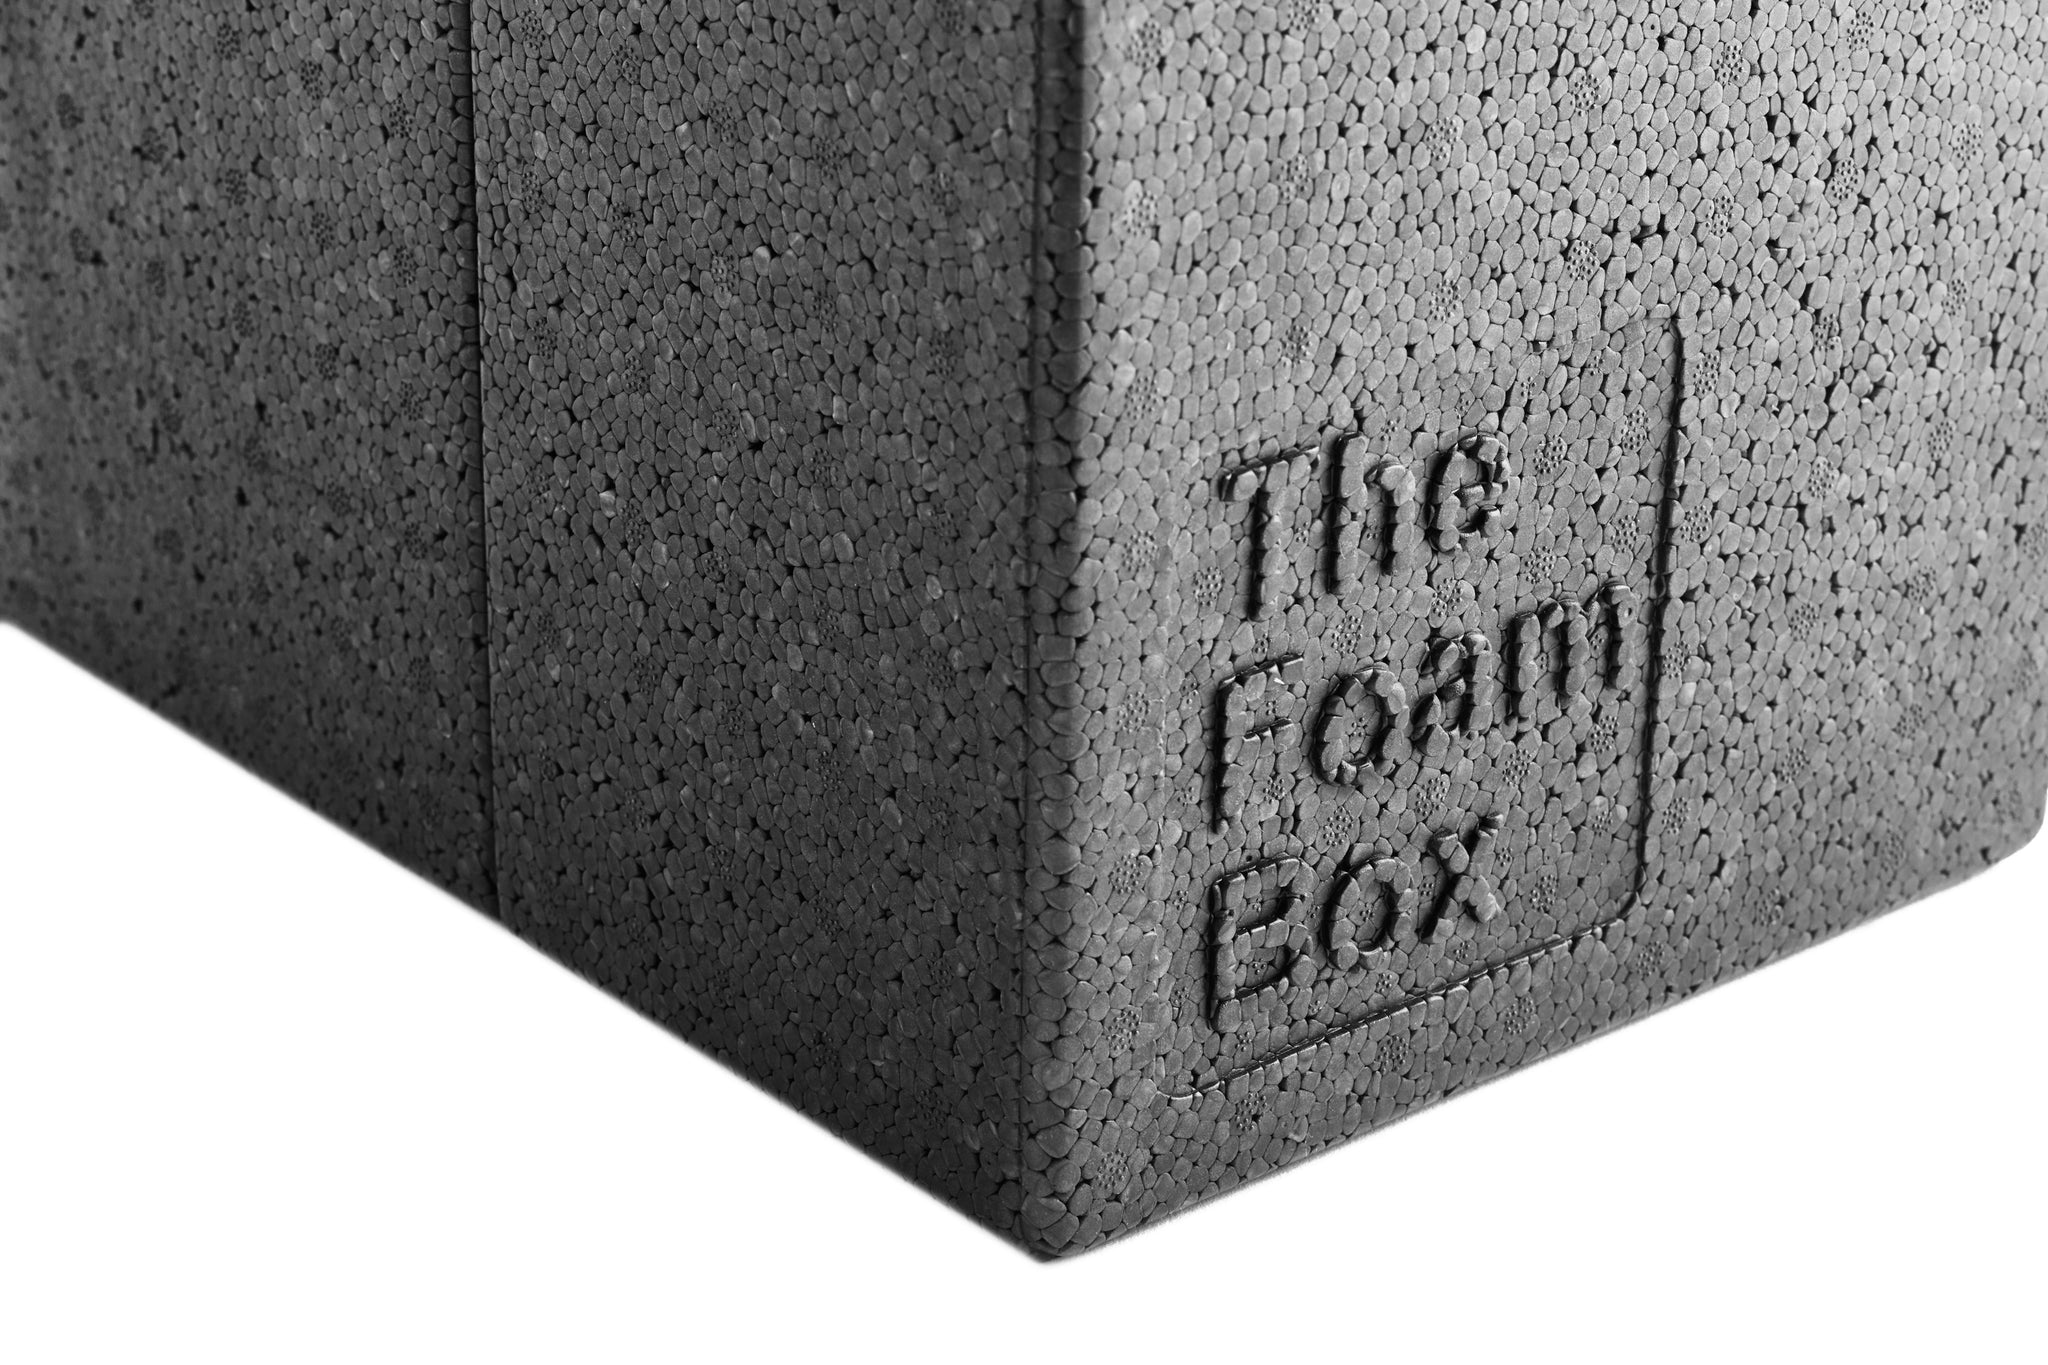 The Foam Box 9x12x18" (23x31x46cm)